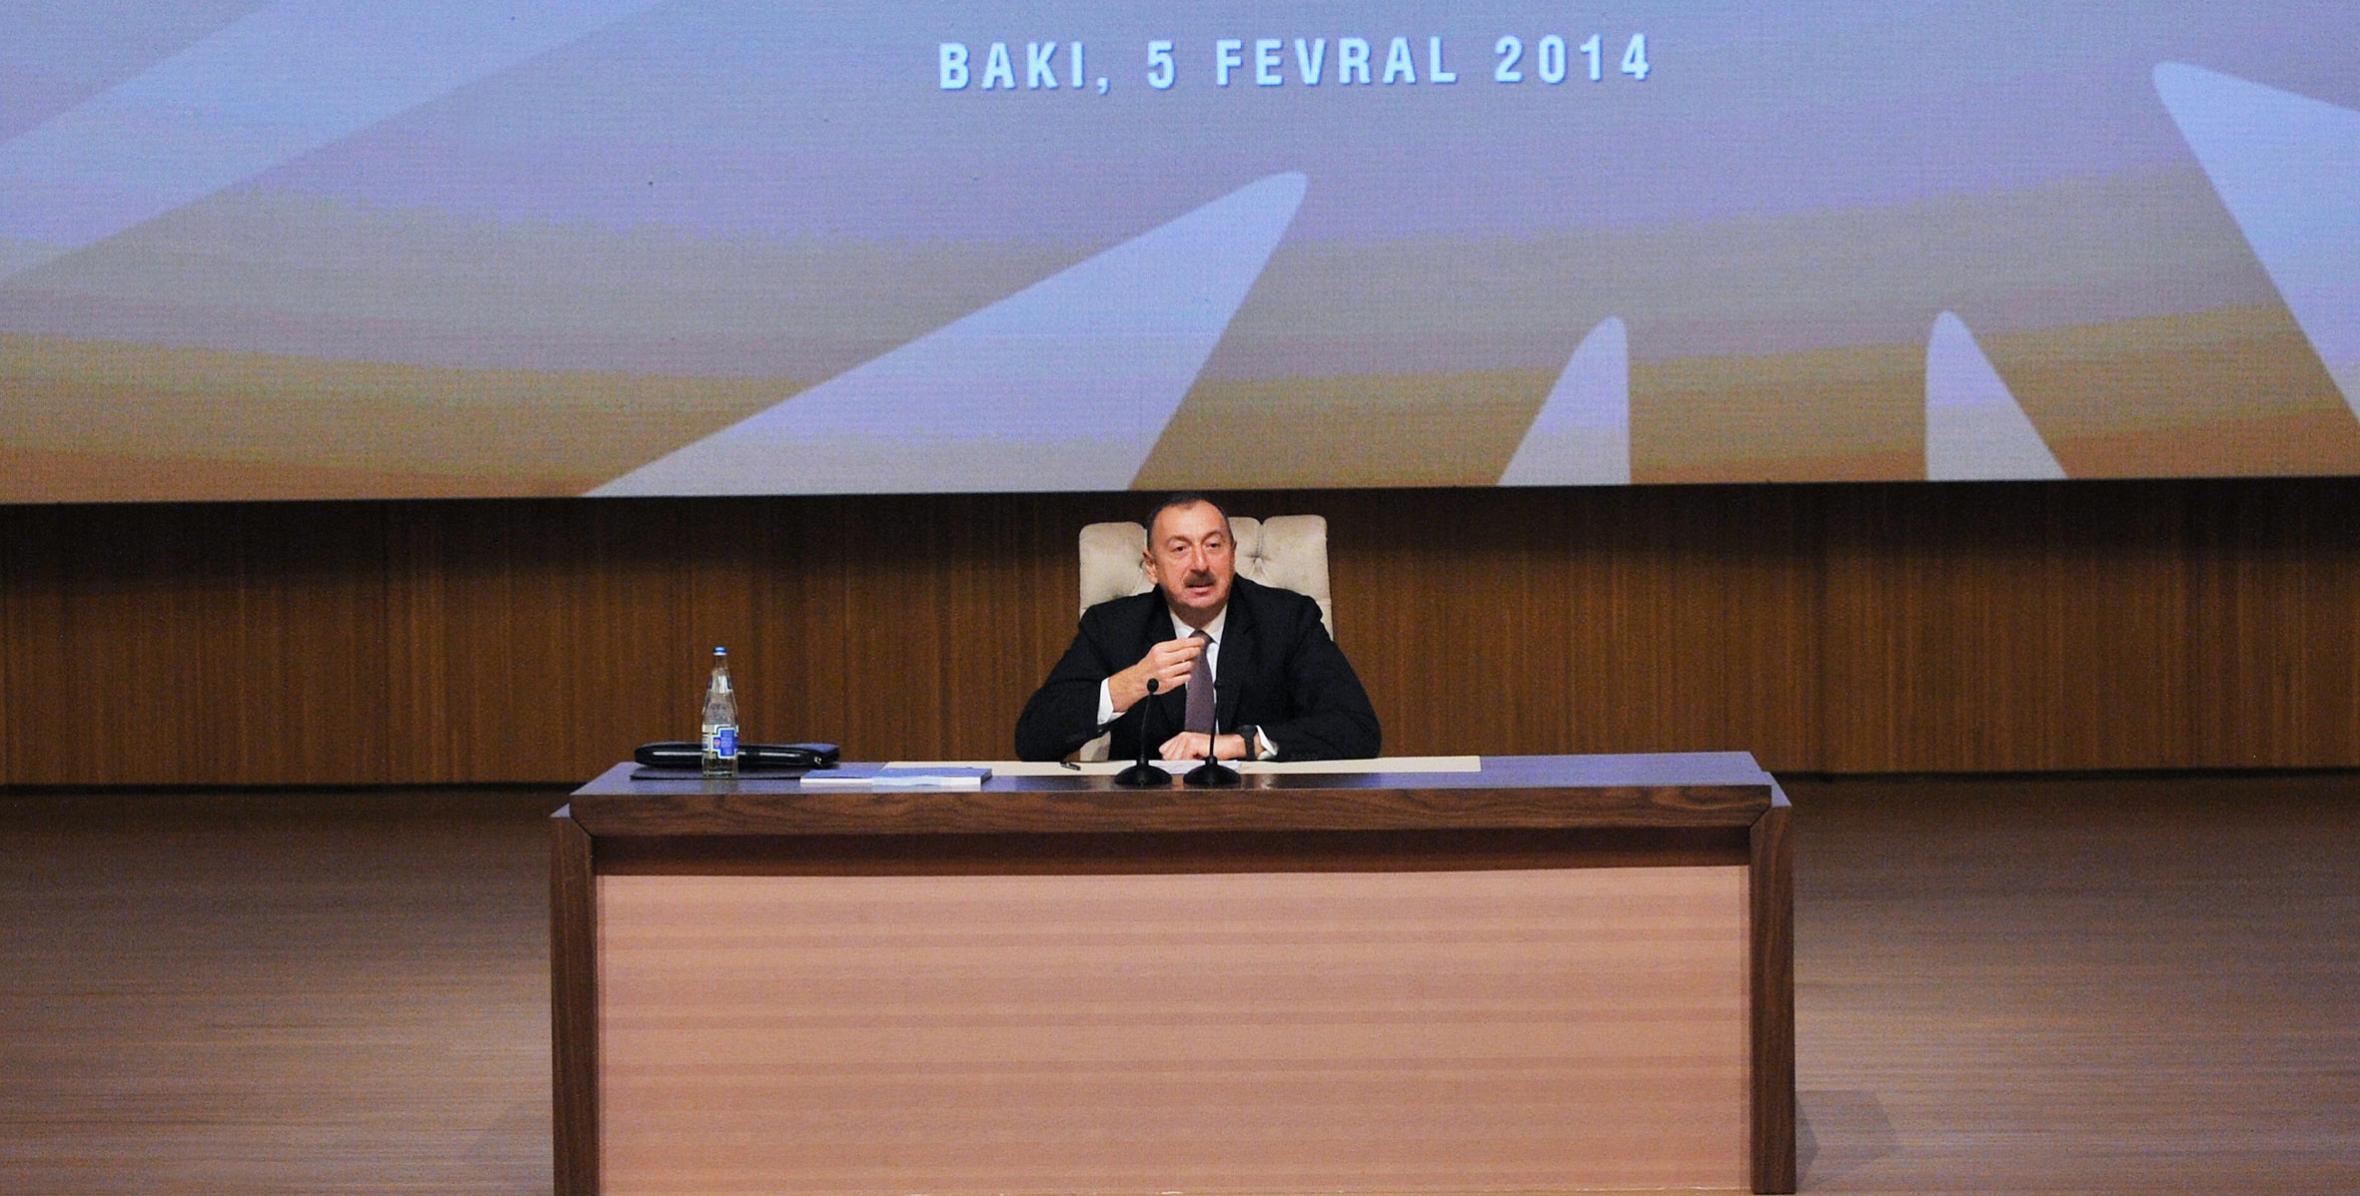 Заключительная речь Ильхама Алиева на конференции, посвященной реализации государственных программ социально-экономического развития регионов Азербайджанской Республики